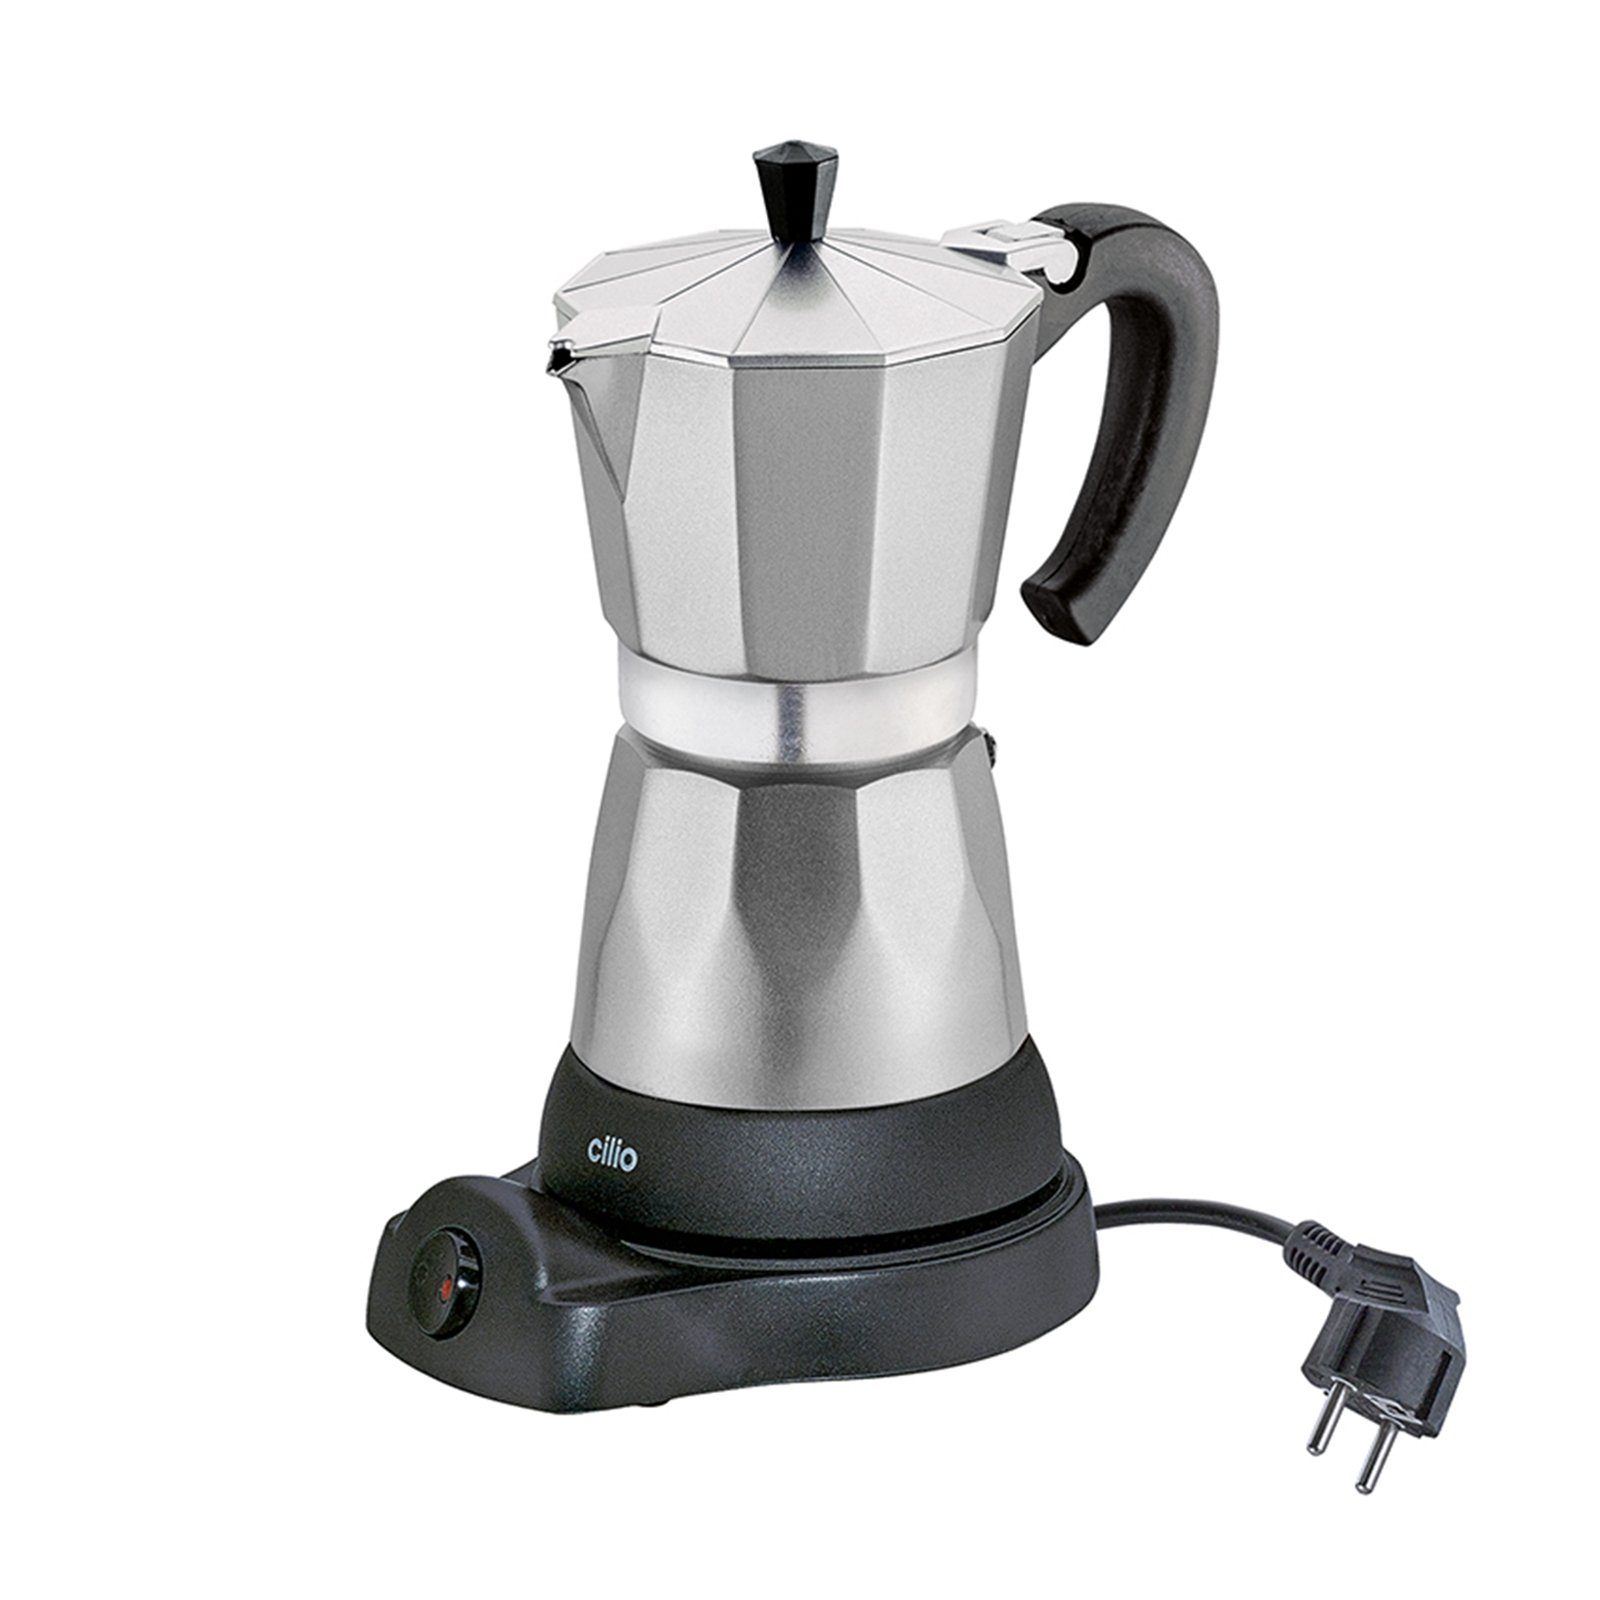 Cilio Espressokocher Elektrischer Espressokocher CLASSICO, mit Warmhaltefunktion, kabelloser Zentralkontakt